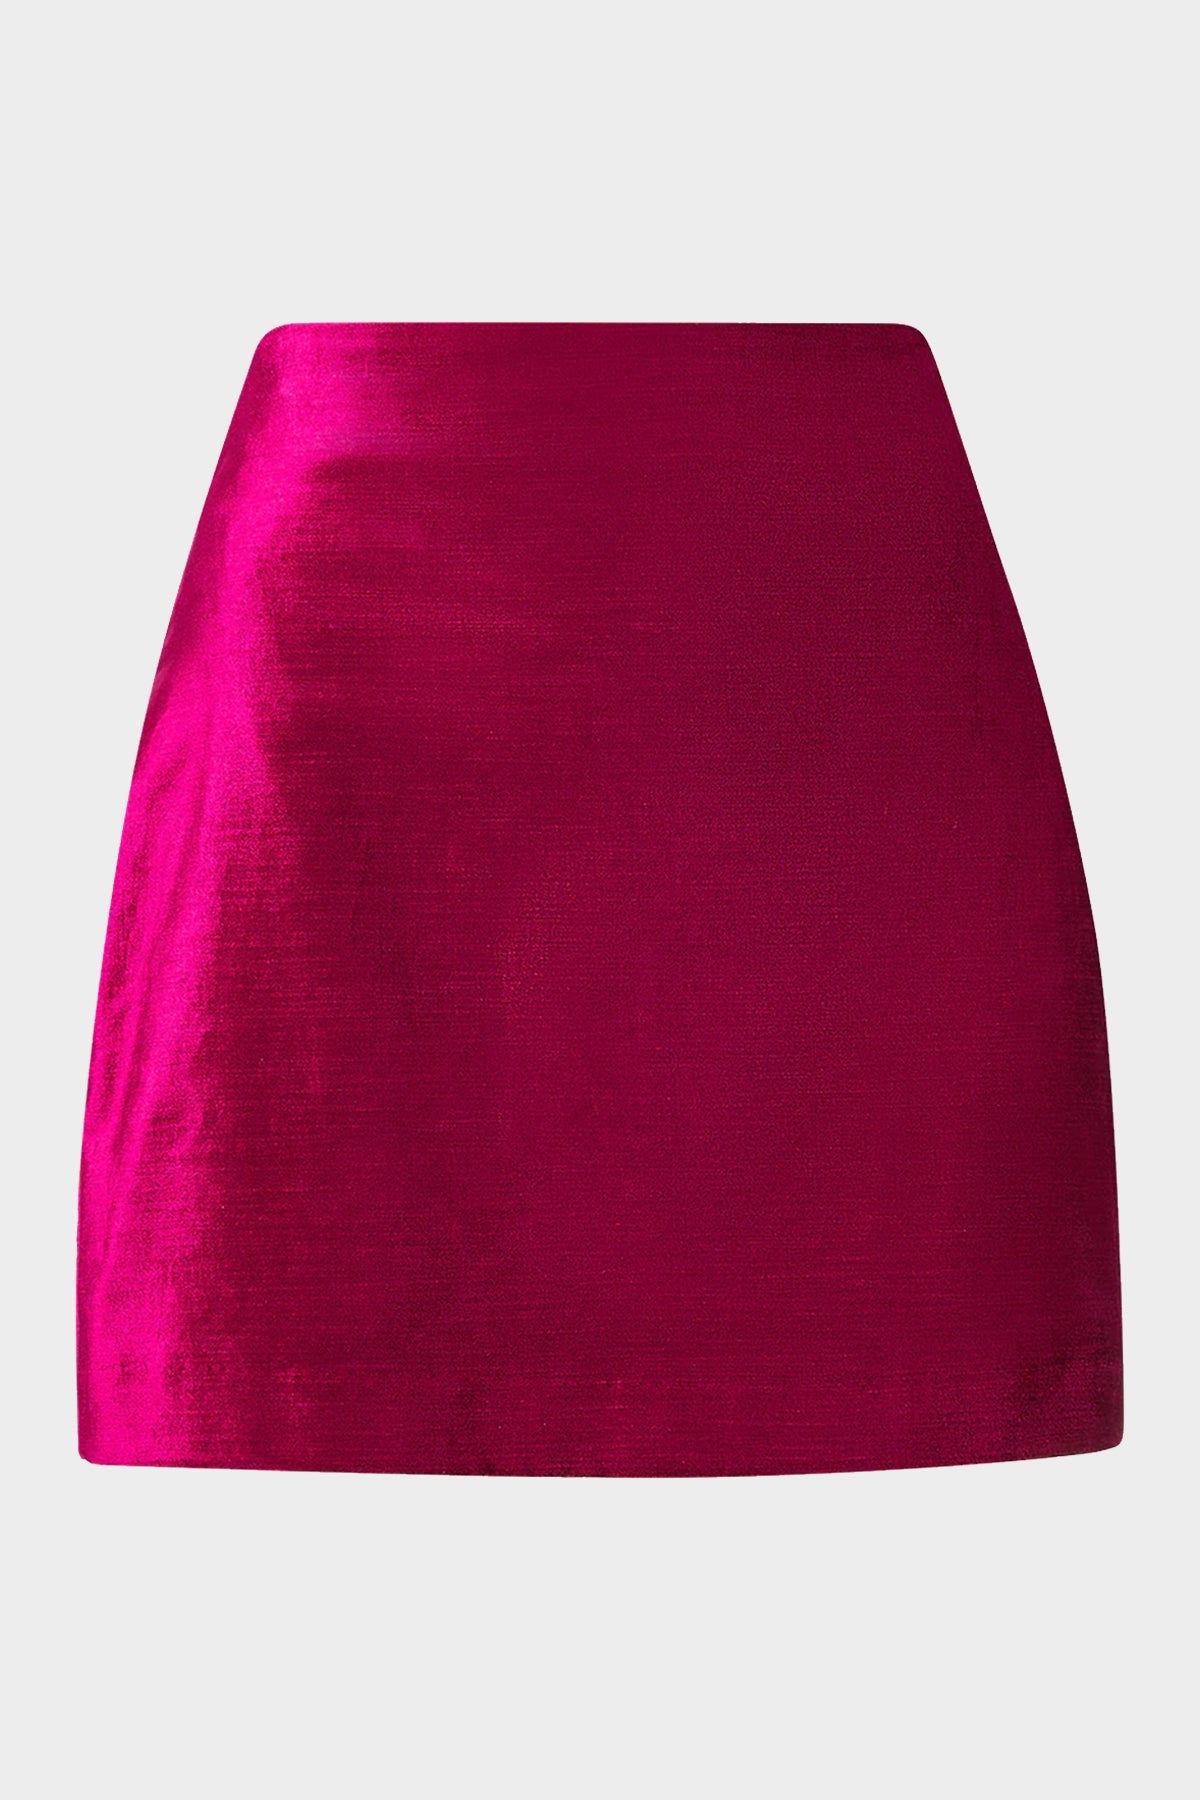 Ohemia Velvet Skirt in Fuchsia - shop-olivia.com